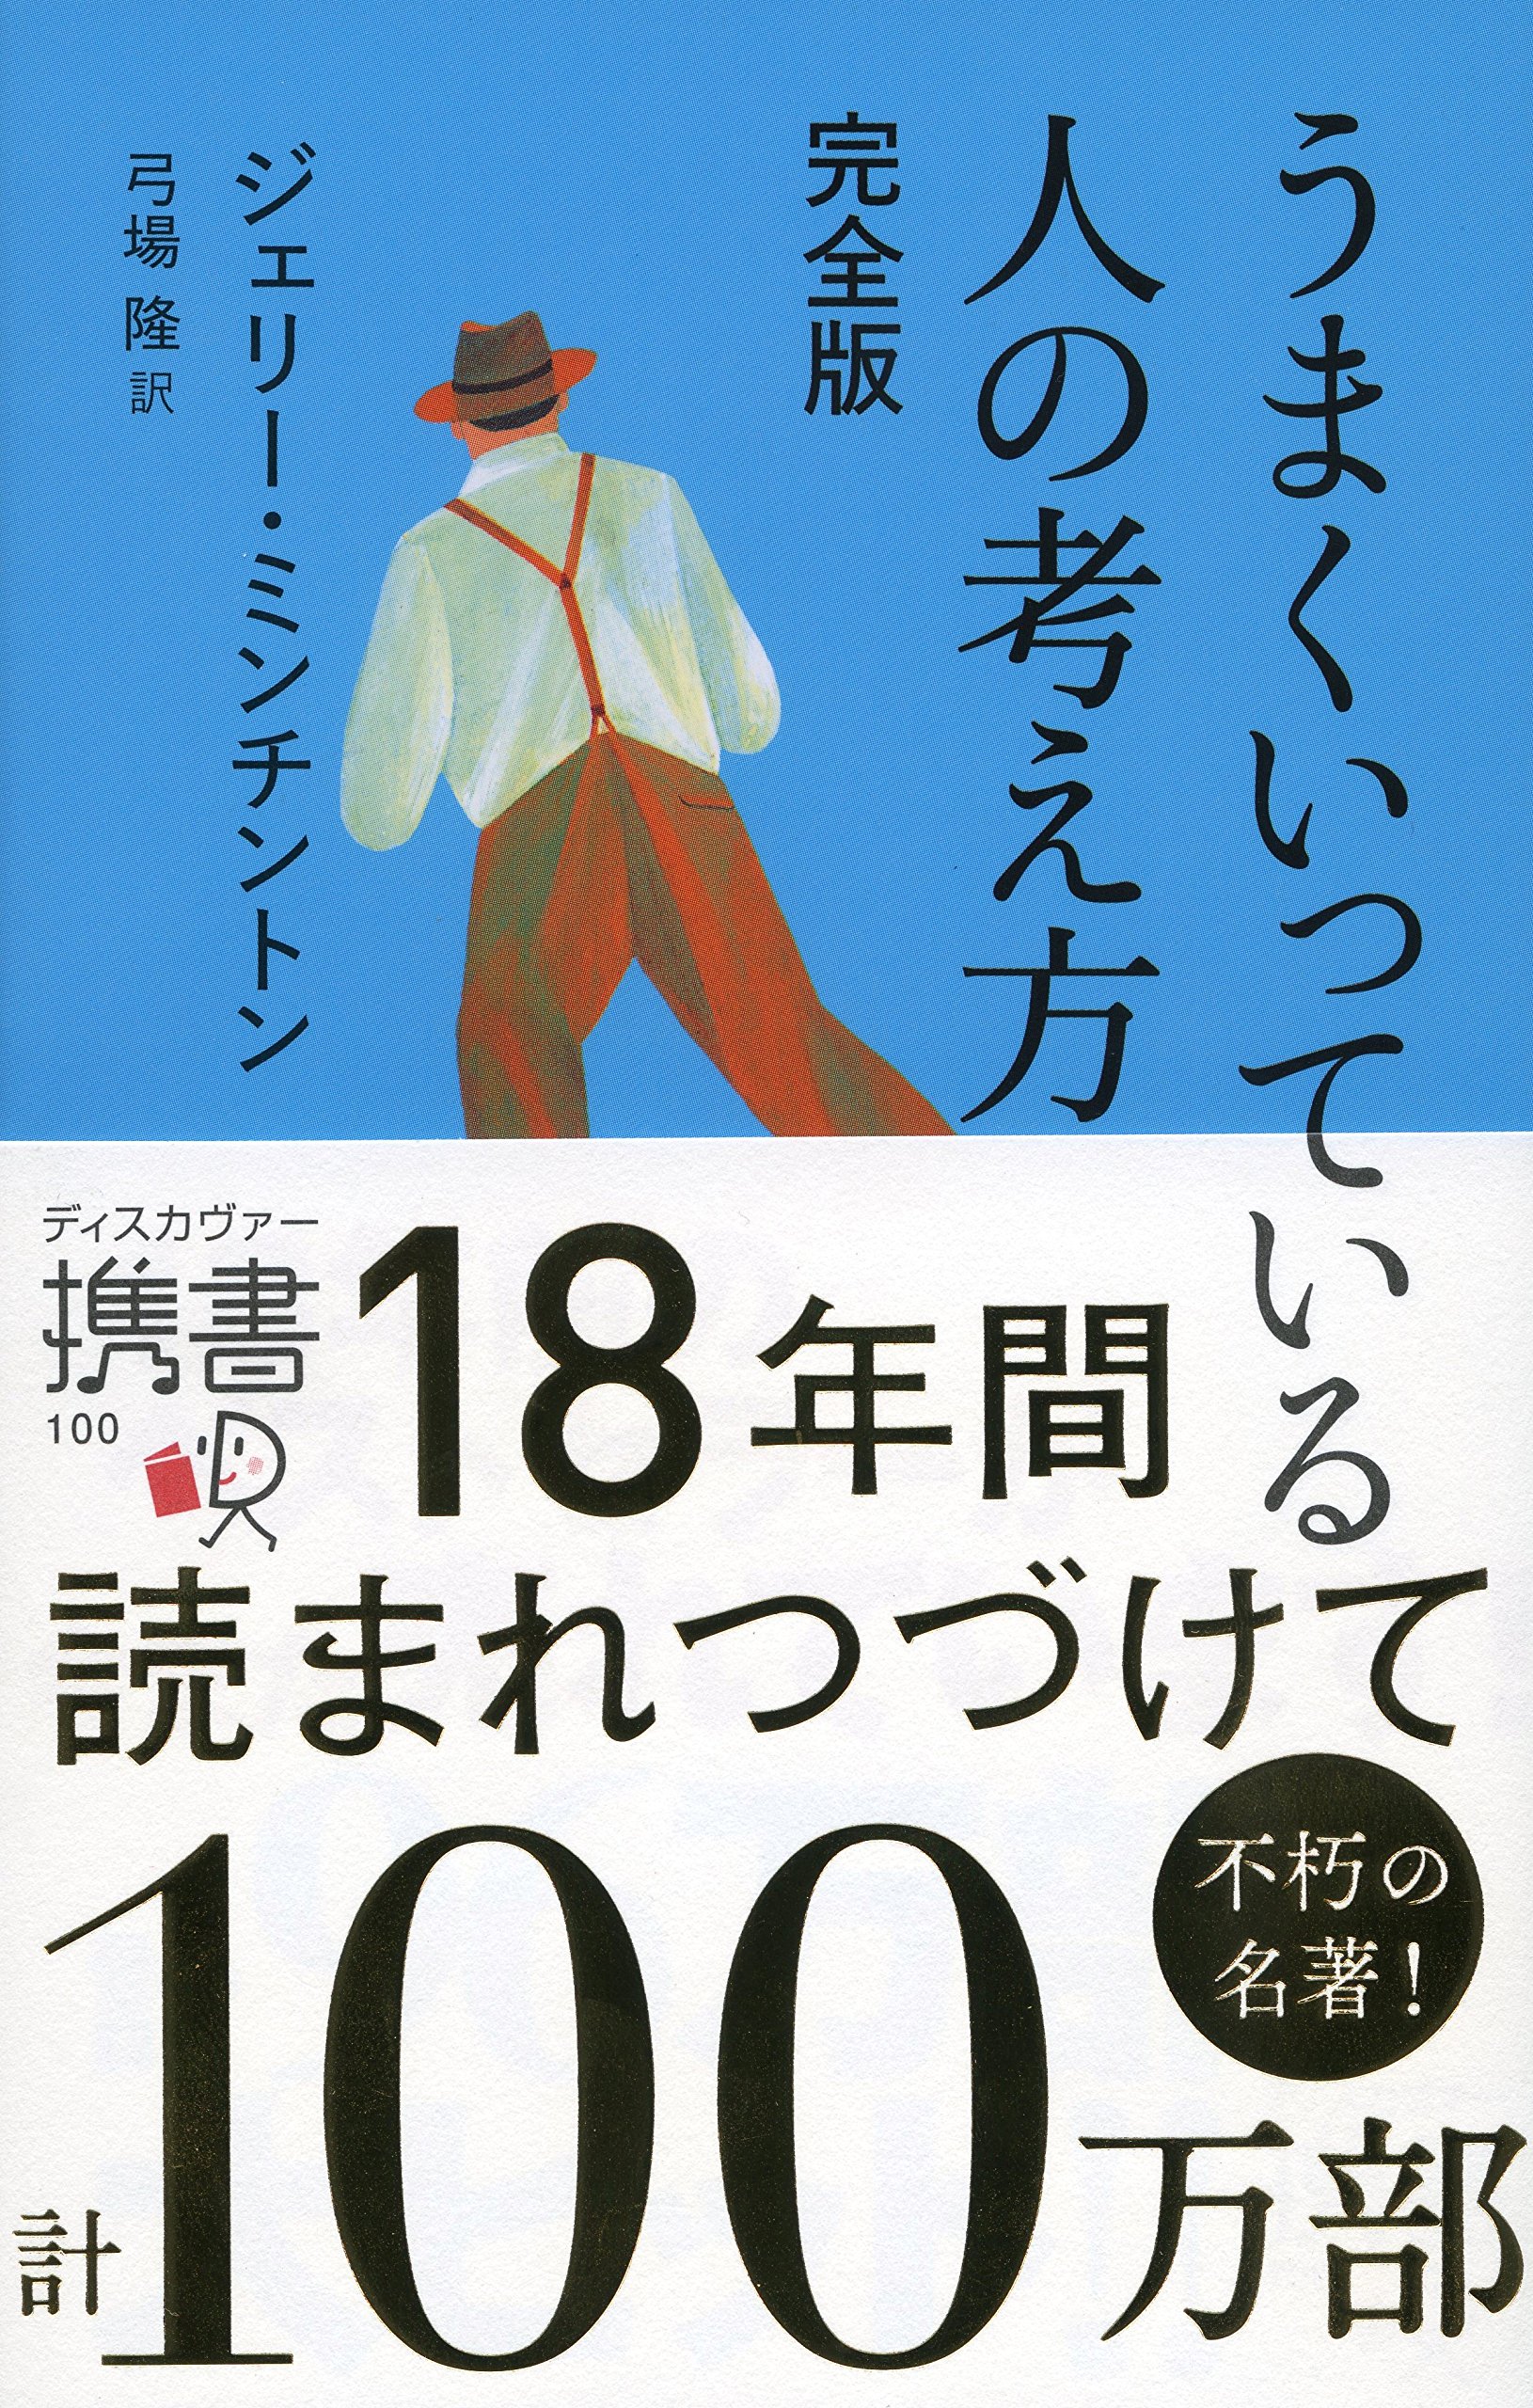 19年 Miwaおすすめの曲ランキング10 Bookcase